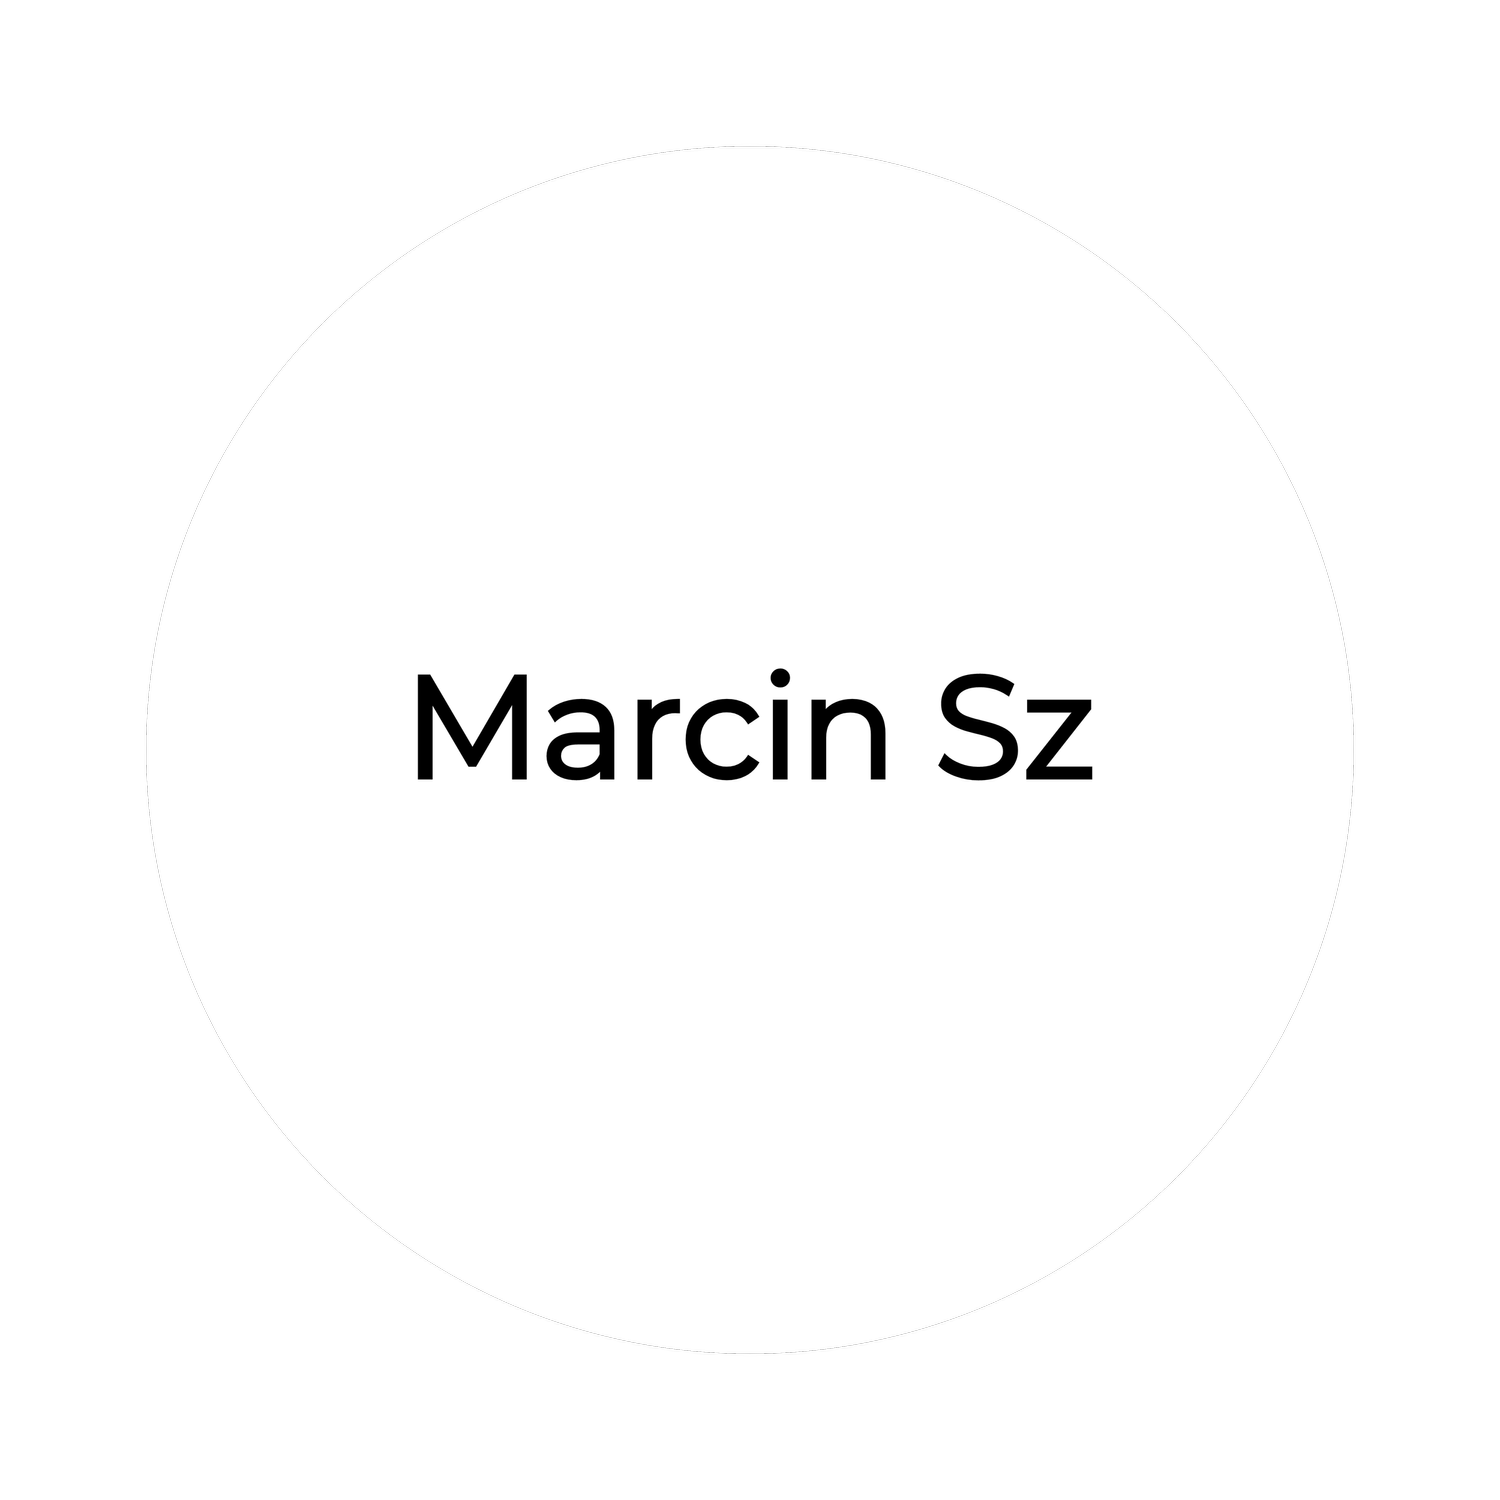 Marcin Sz